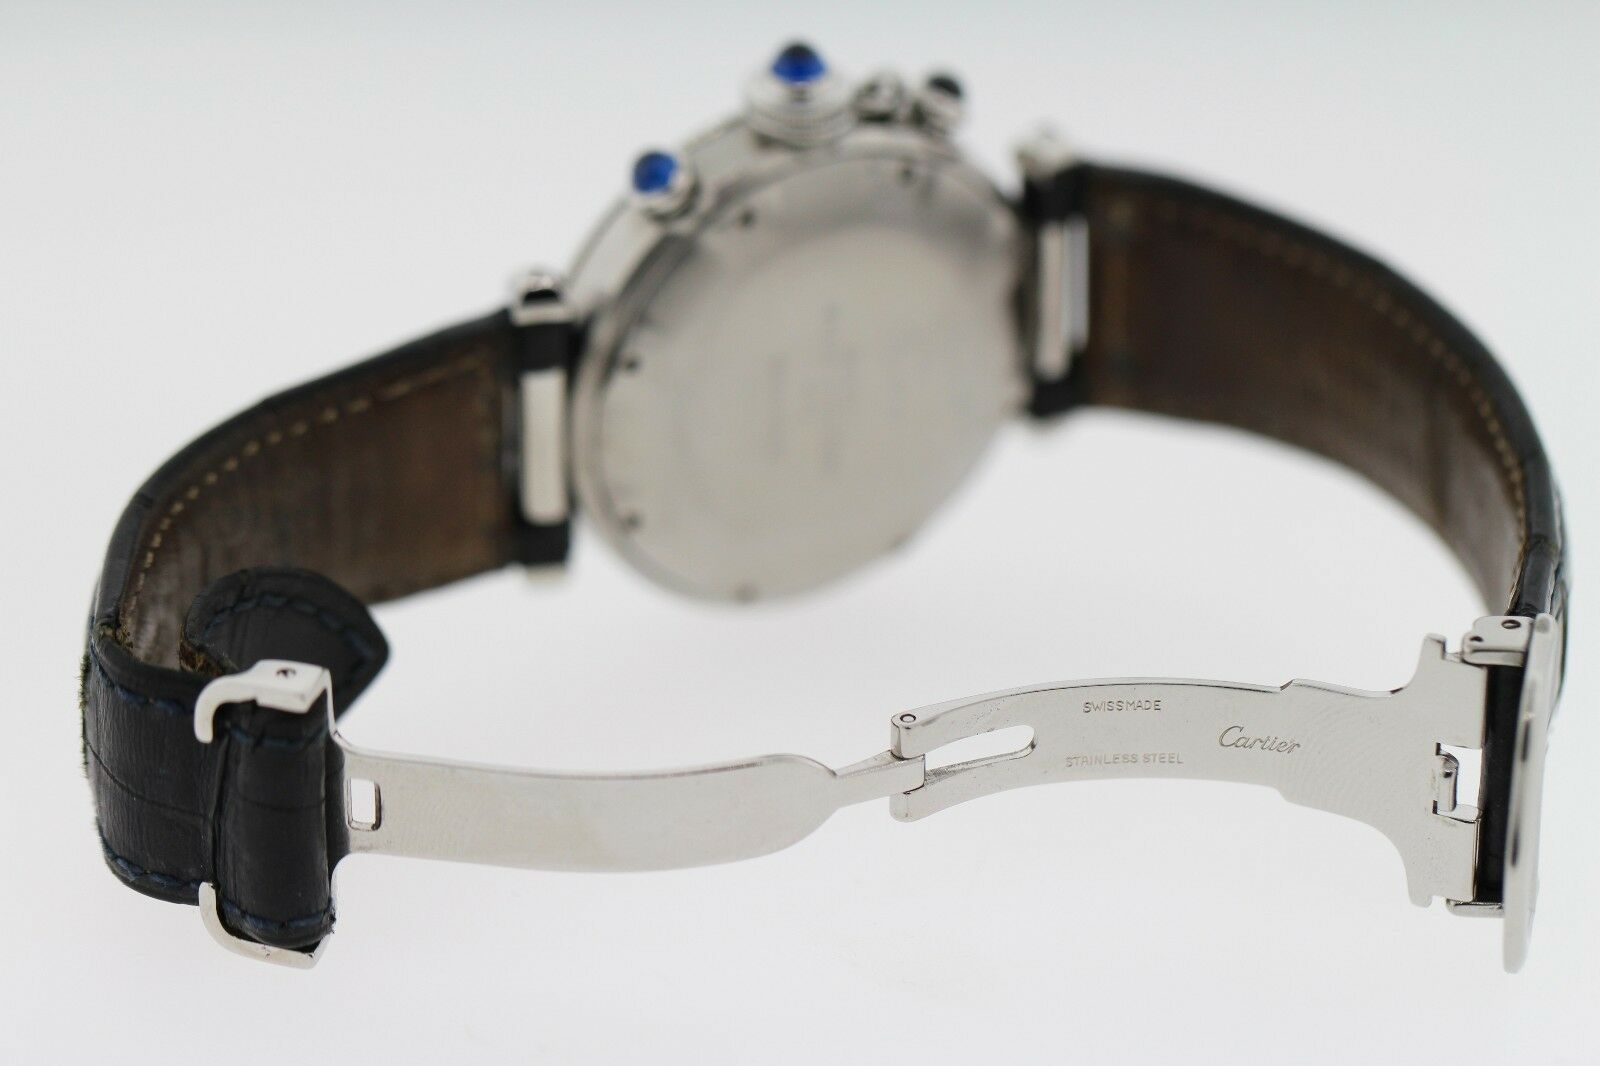 Cartier de Pasha 38mm Quartz Water Resistant Unisex Brown Crocodile Band Watch